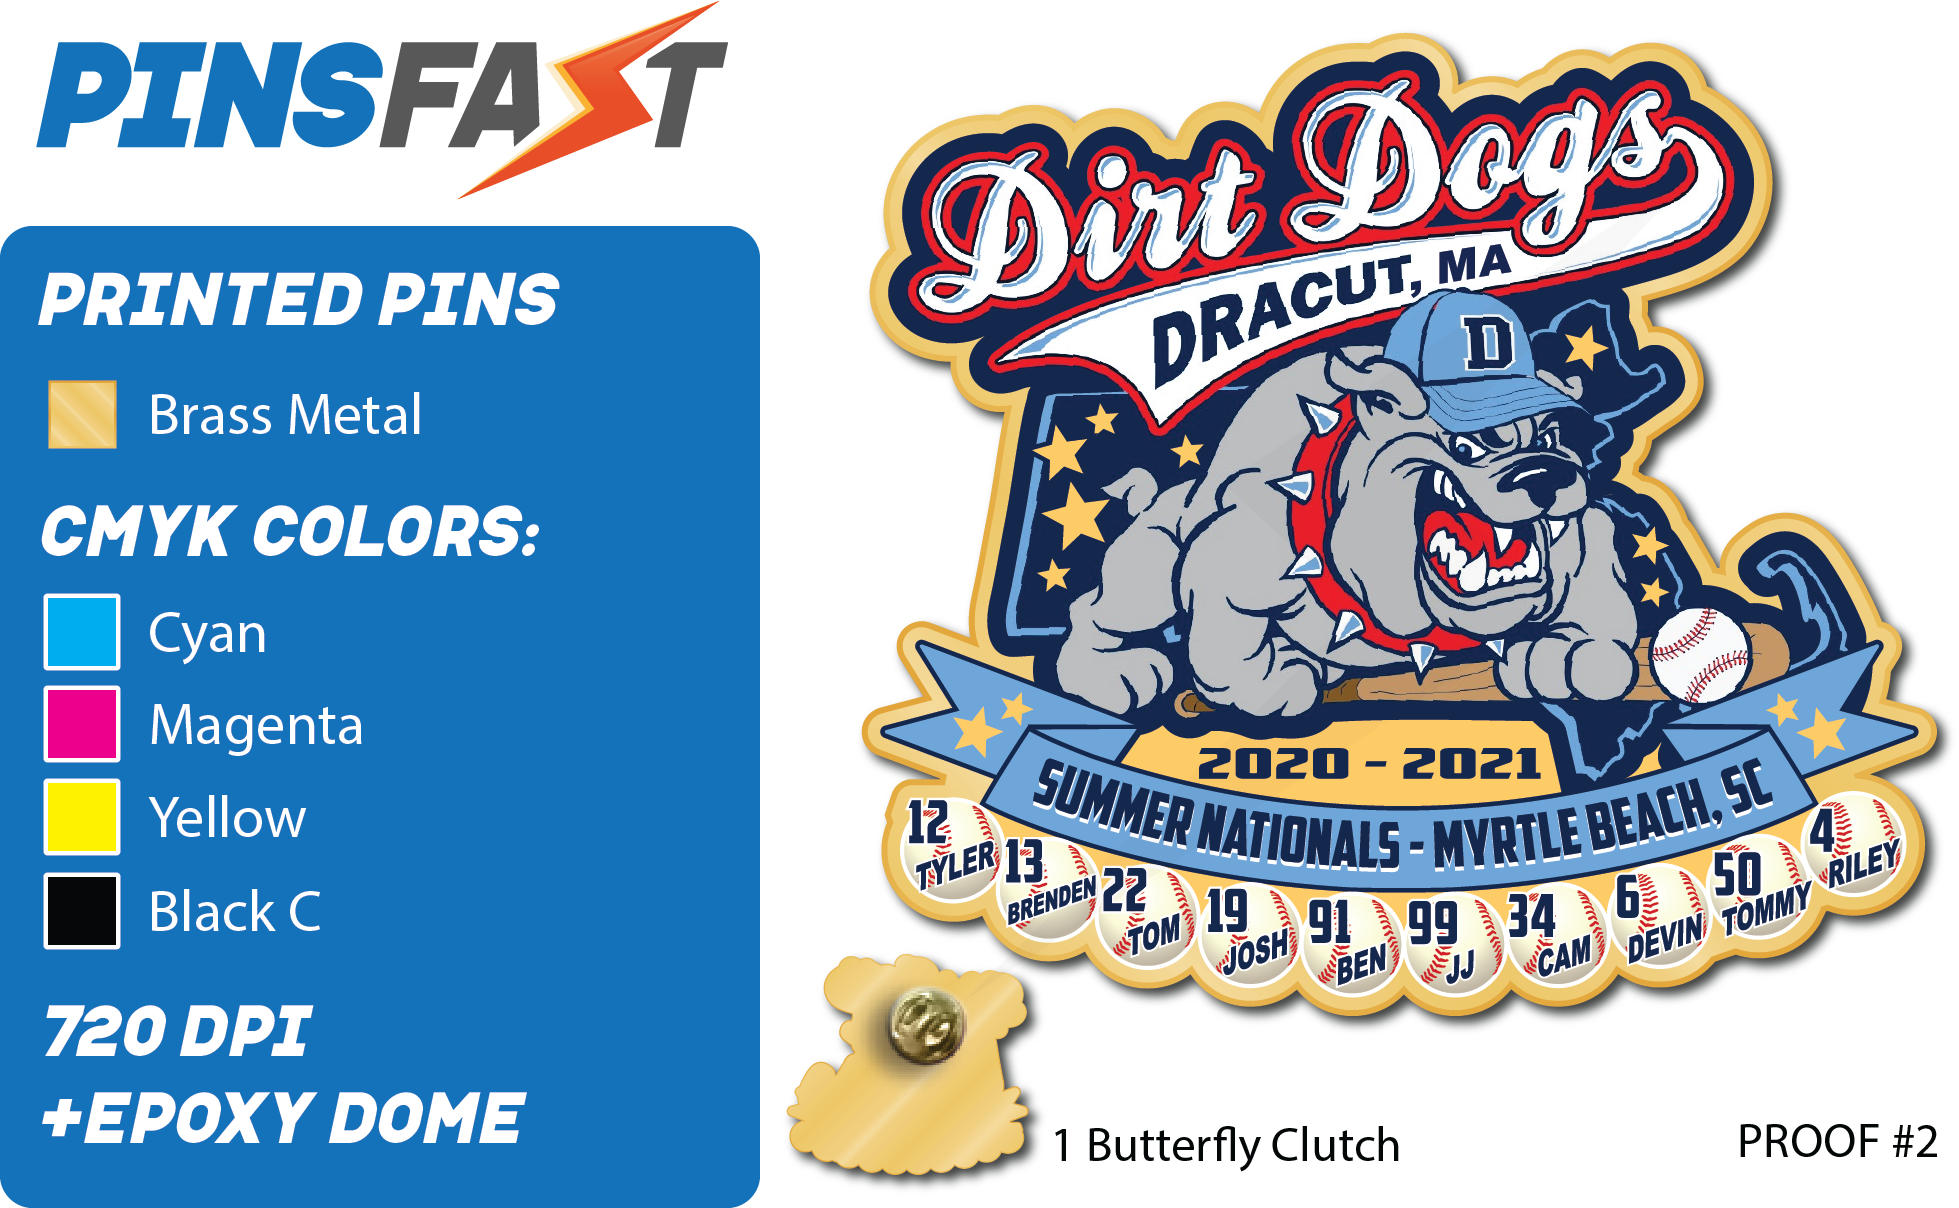 Dirt-Dogs-Dracut